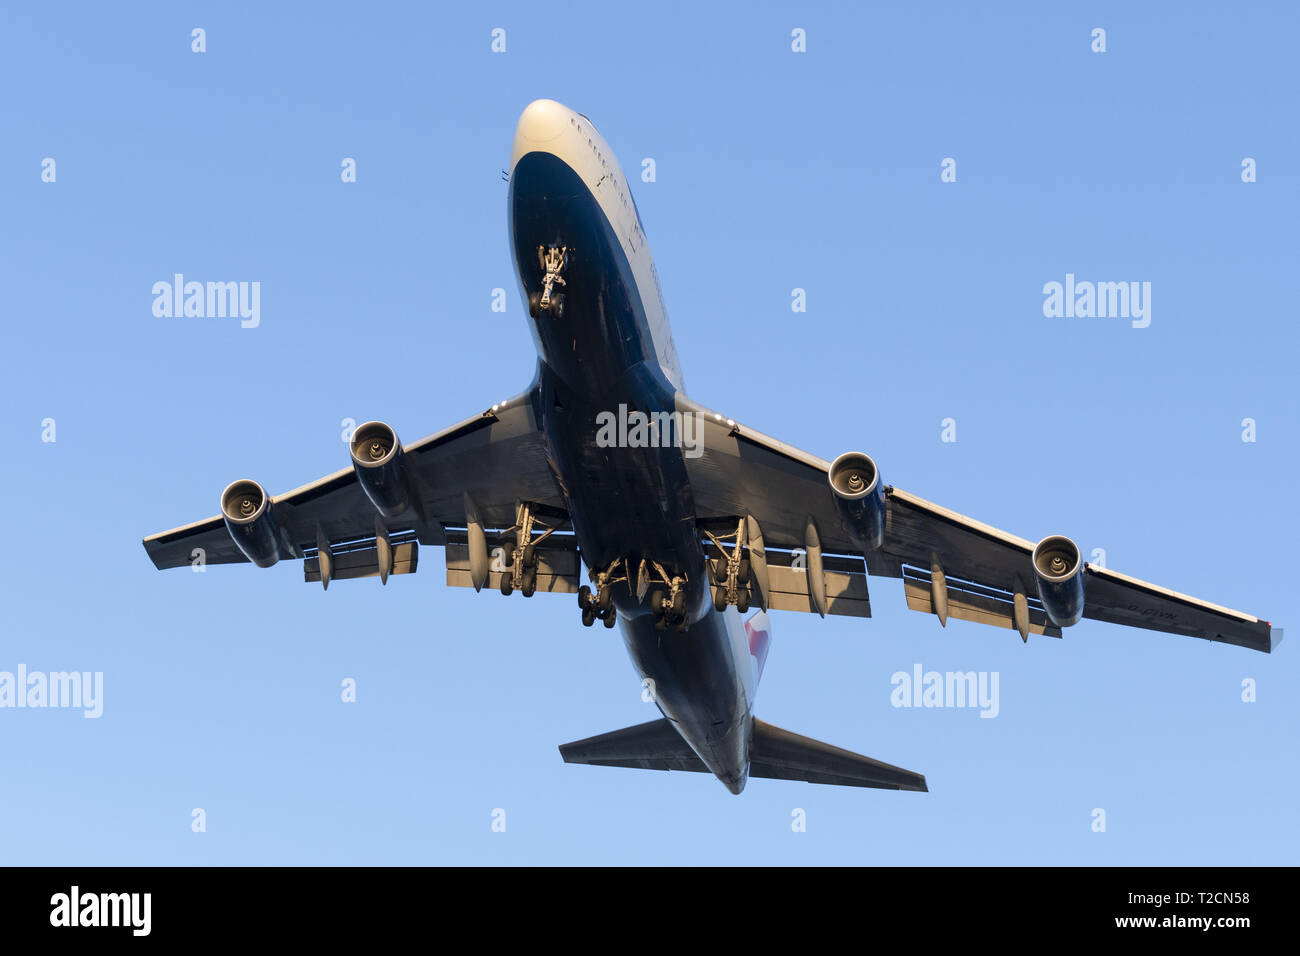 Richmond, British Columbia, Canada. 31 Mar, 2019. Un British Airways Boeing 747-400 (G-CIVN) wide-body jetliner sul breve avvicinamento finale per l'atterraggio. Credito: Bayne Stanley/ZUMA filo/Alamy Live News Foto Stock